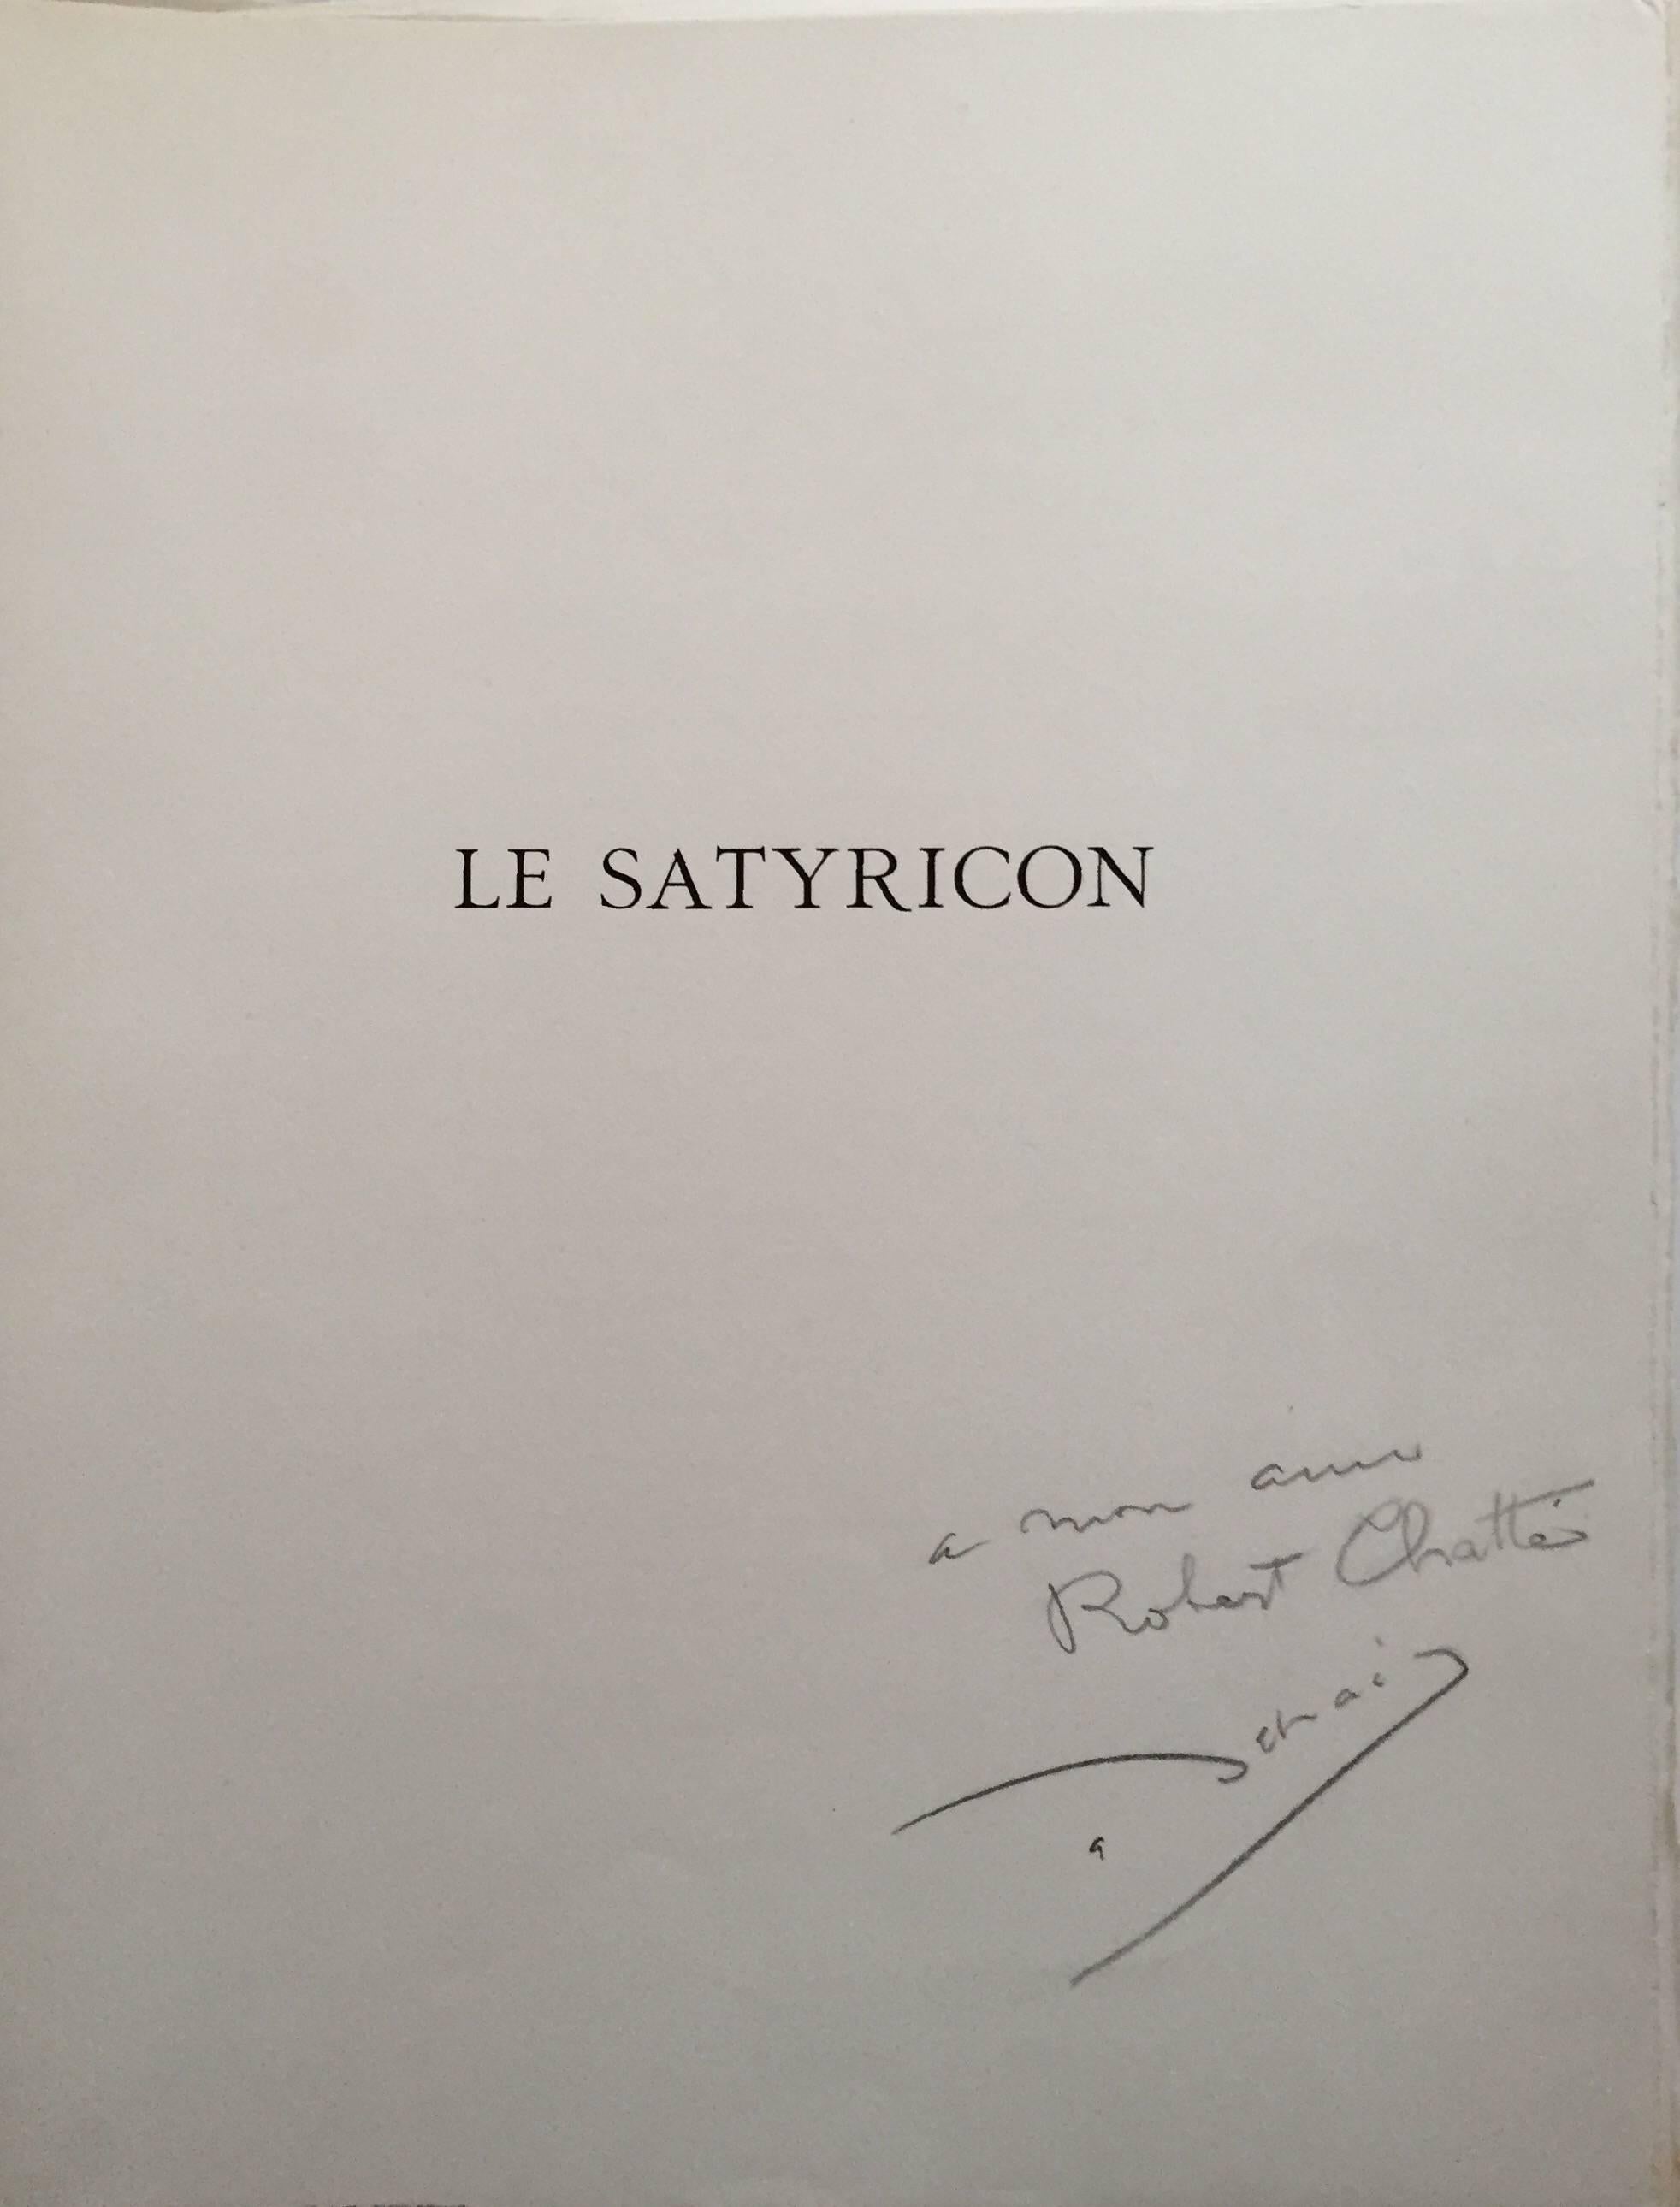 Erotice Radierung von Le Satyricon  (Grau), Figurative Print, von André Derain